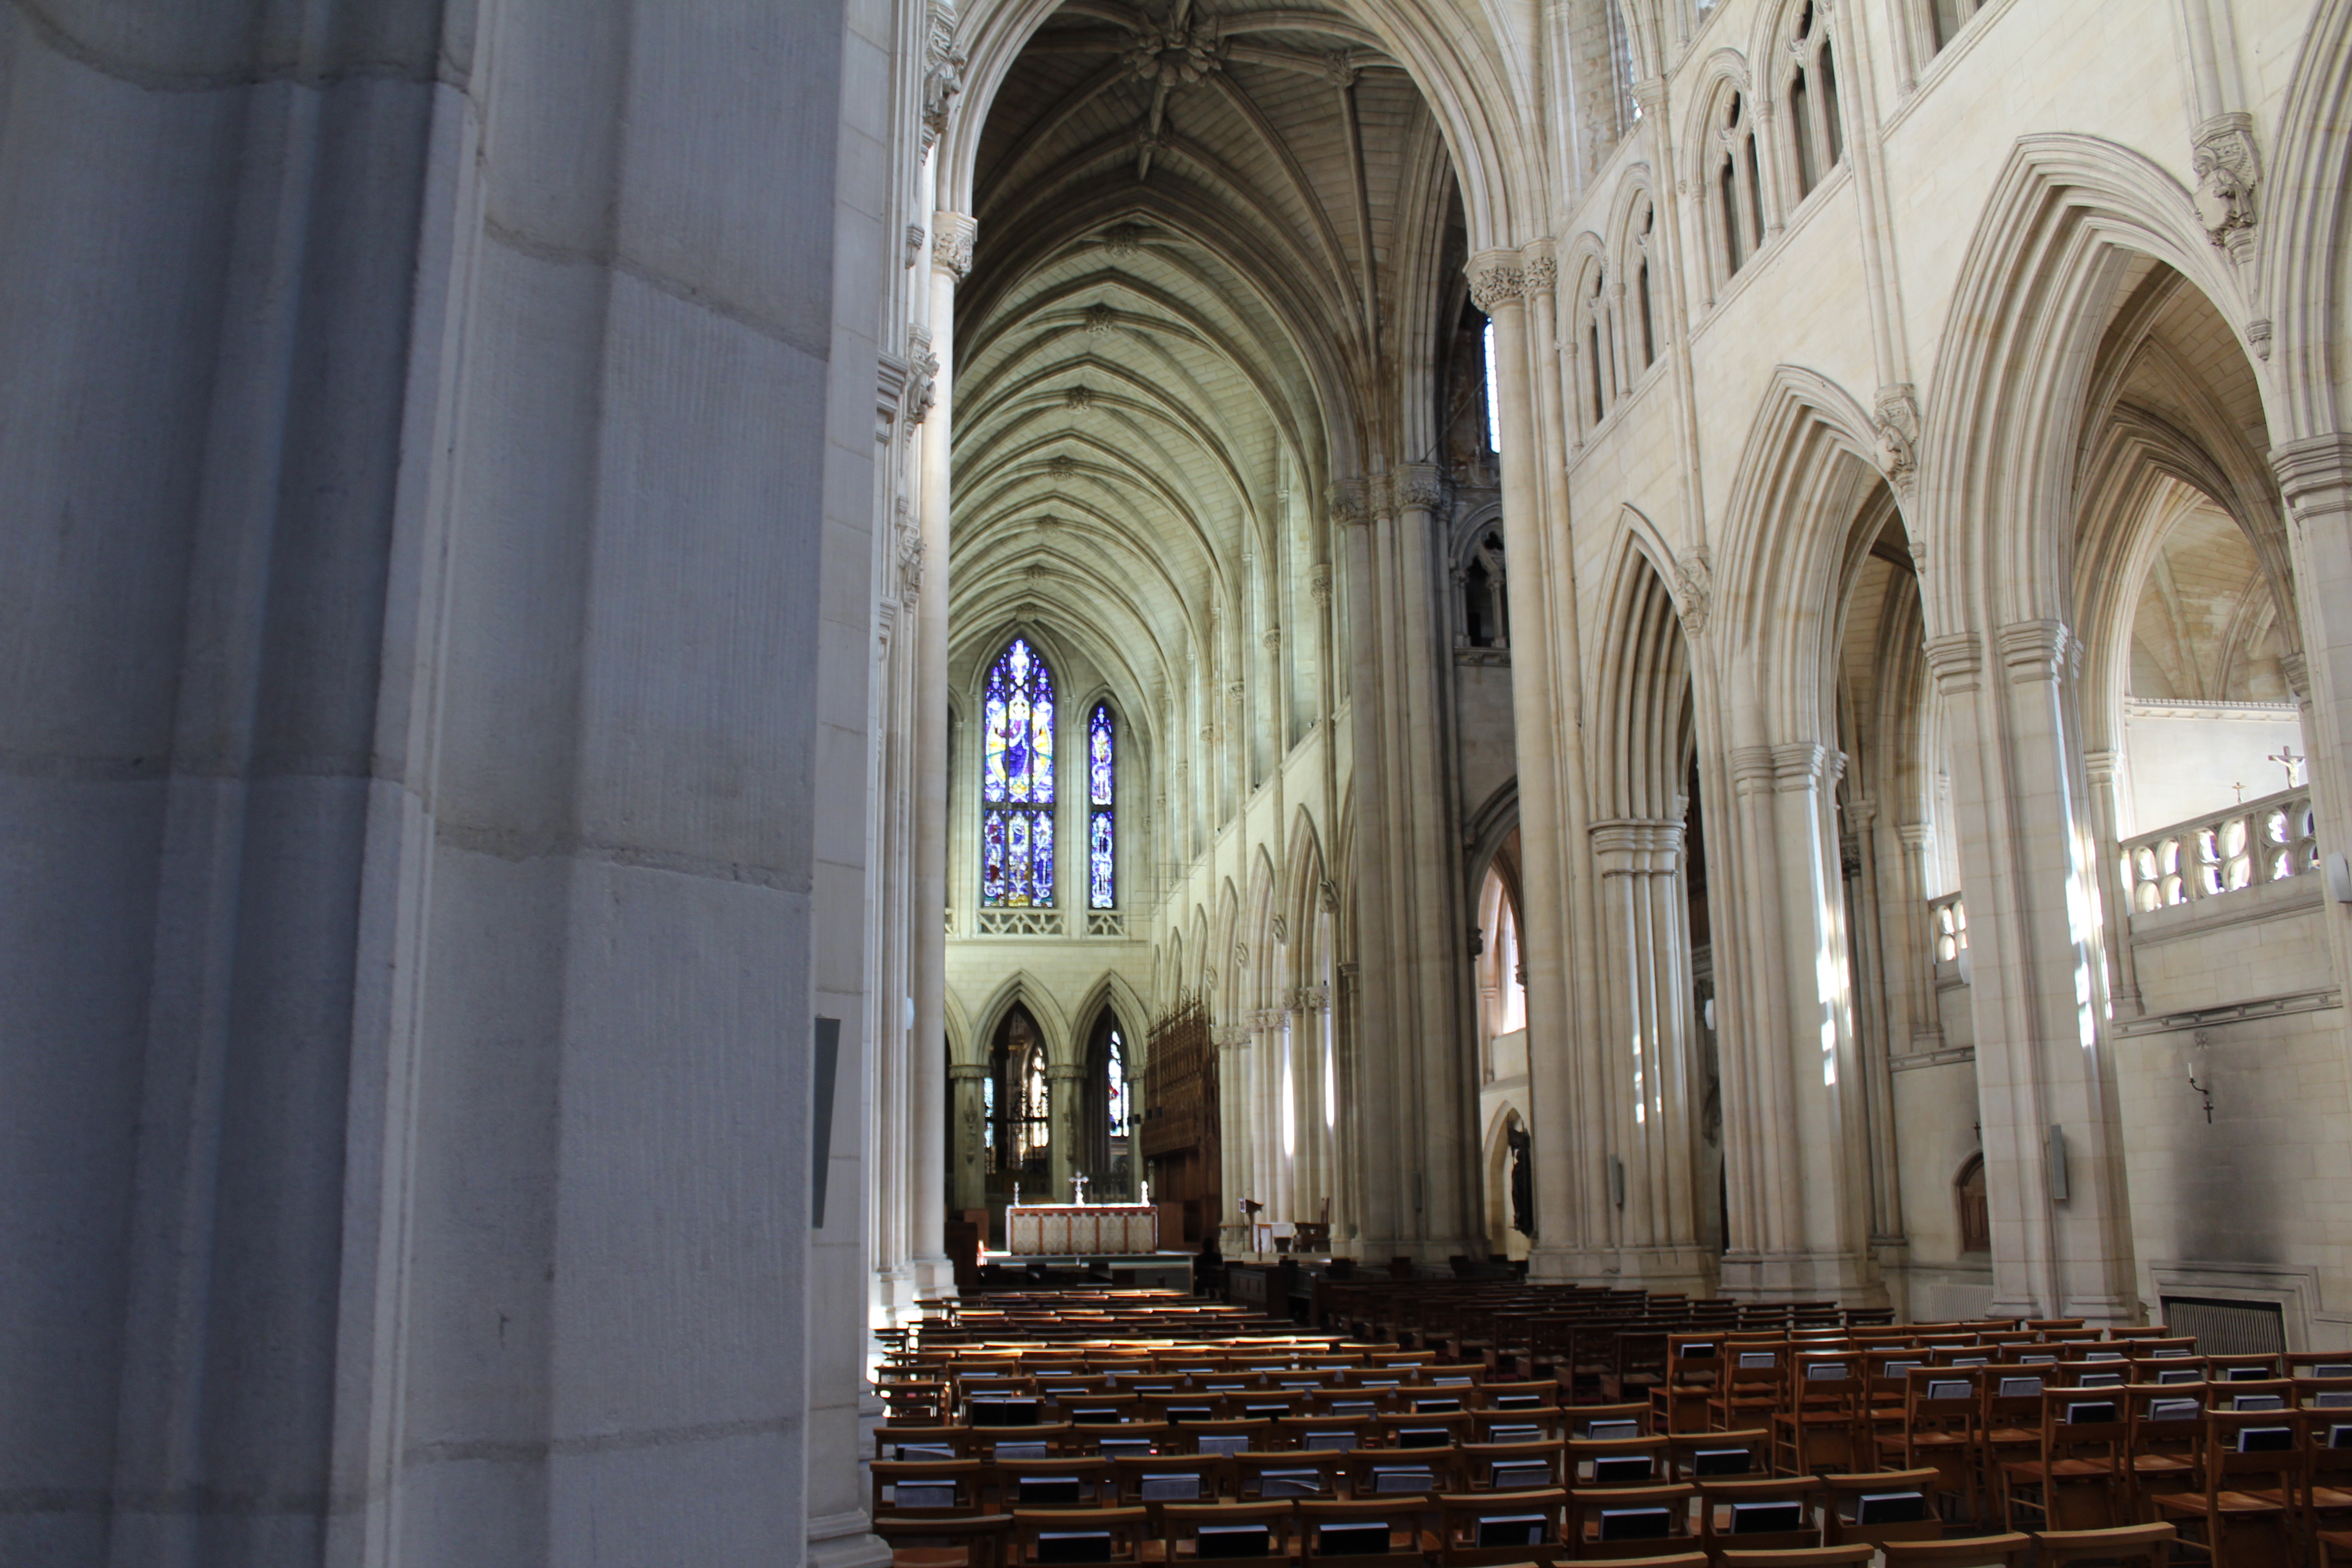 Inside Downside Abbey